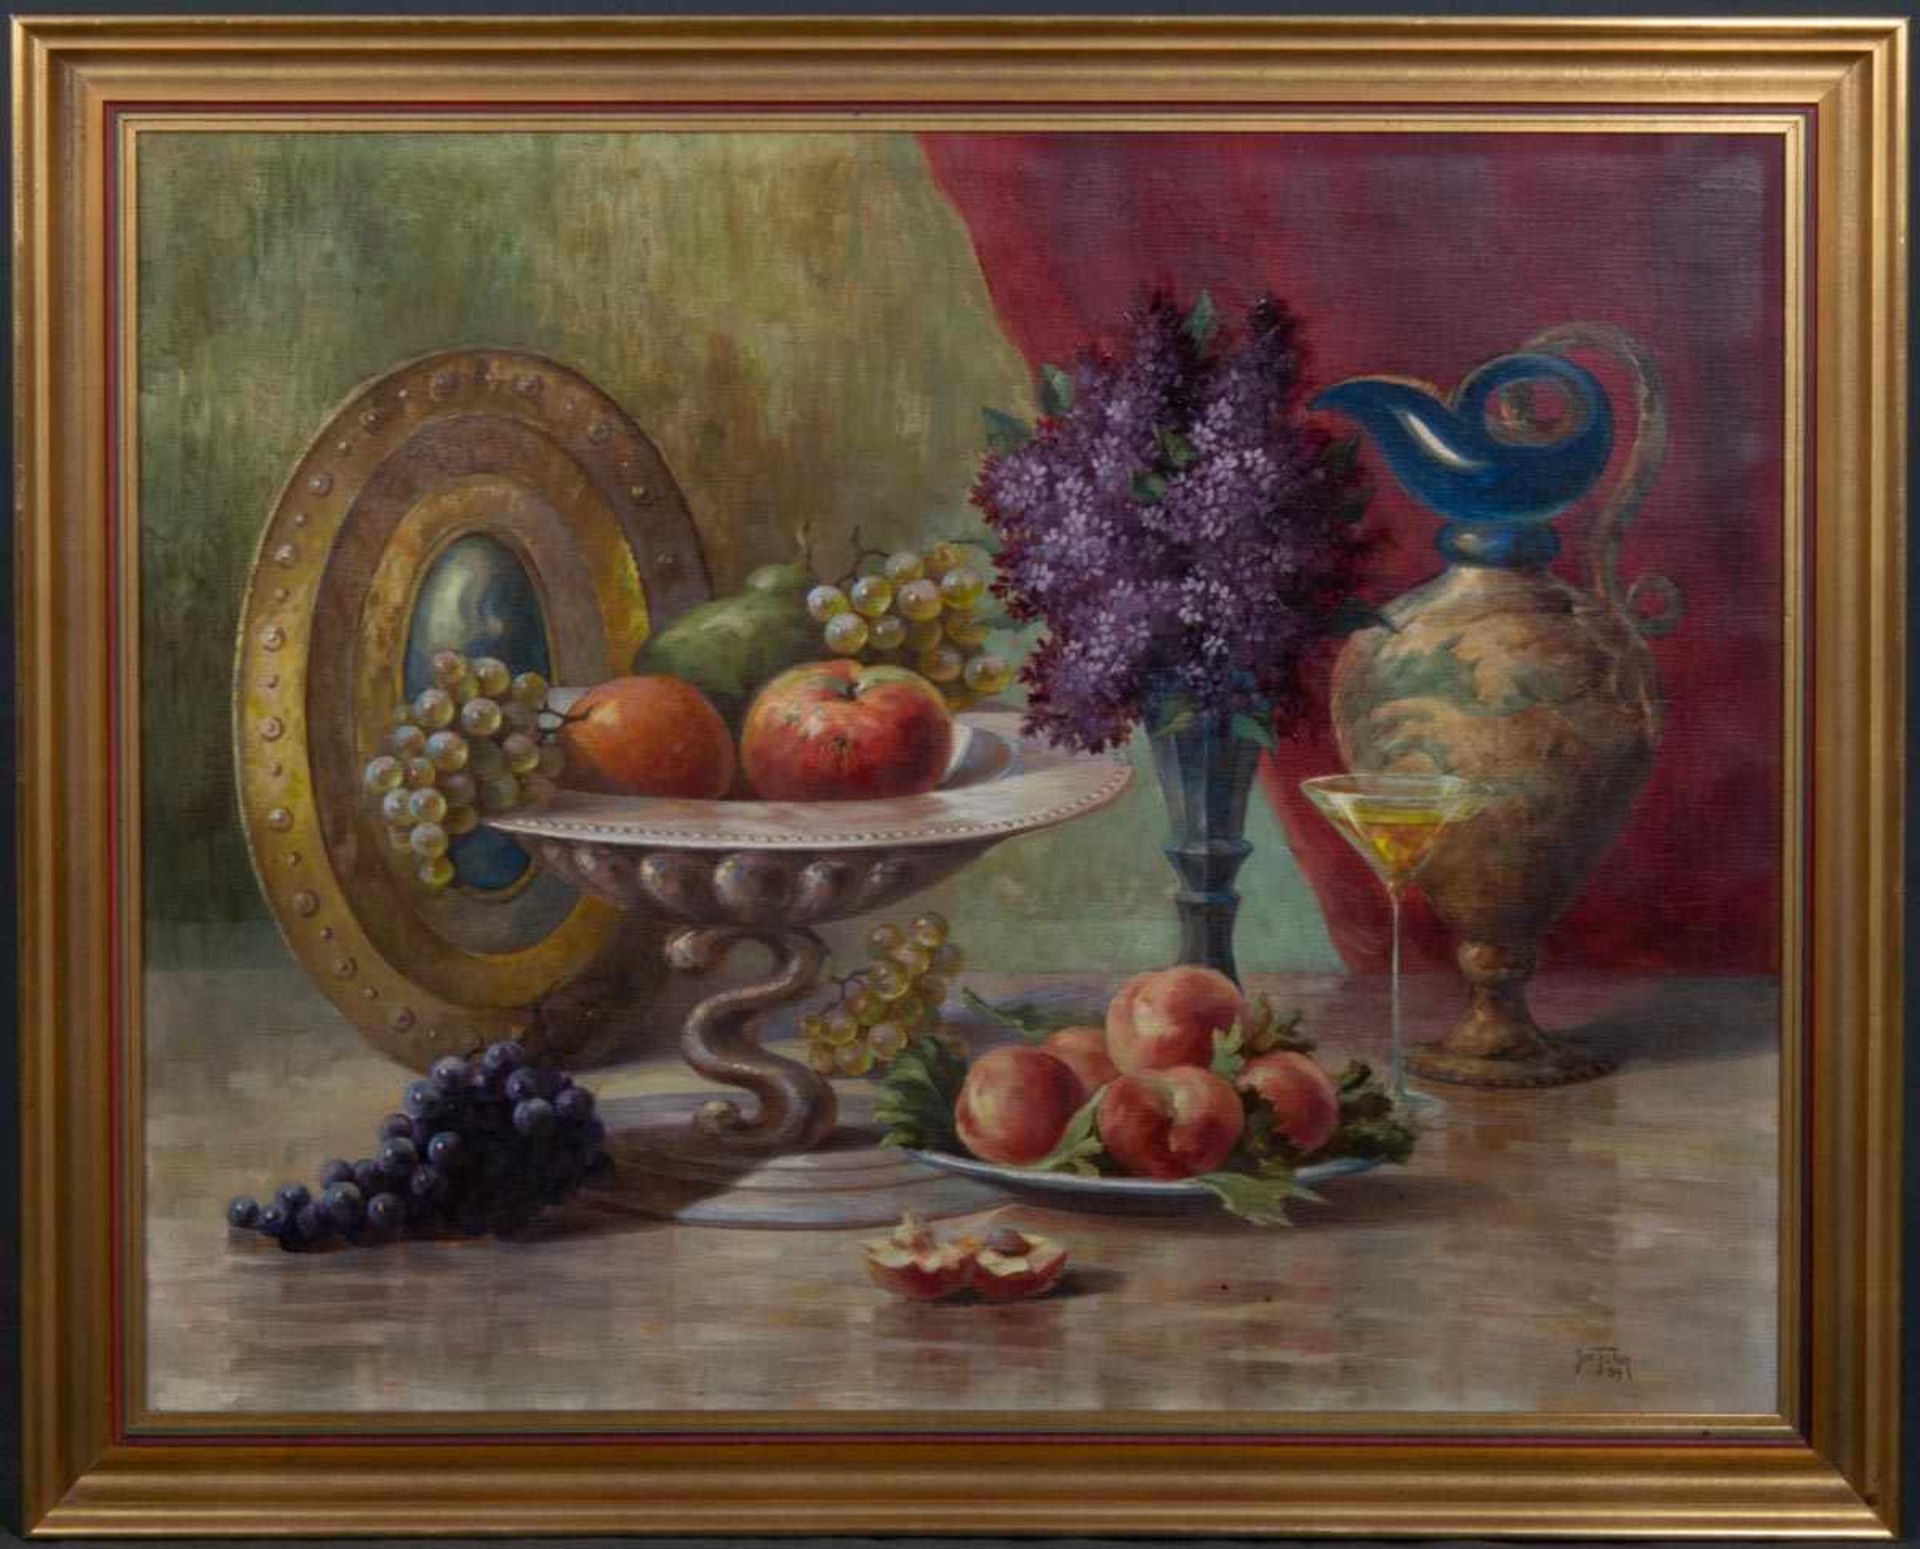 "Großes Stilleben". Gemälde, Öl auf Leinwand, ca. 75 x 95 cm, signiert Jos(ef) Faber (19)39, war